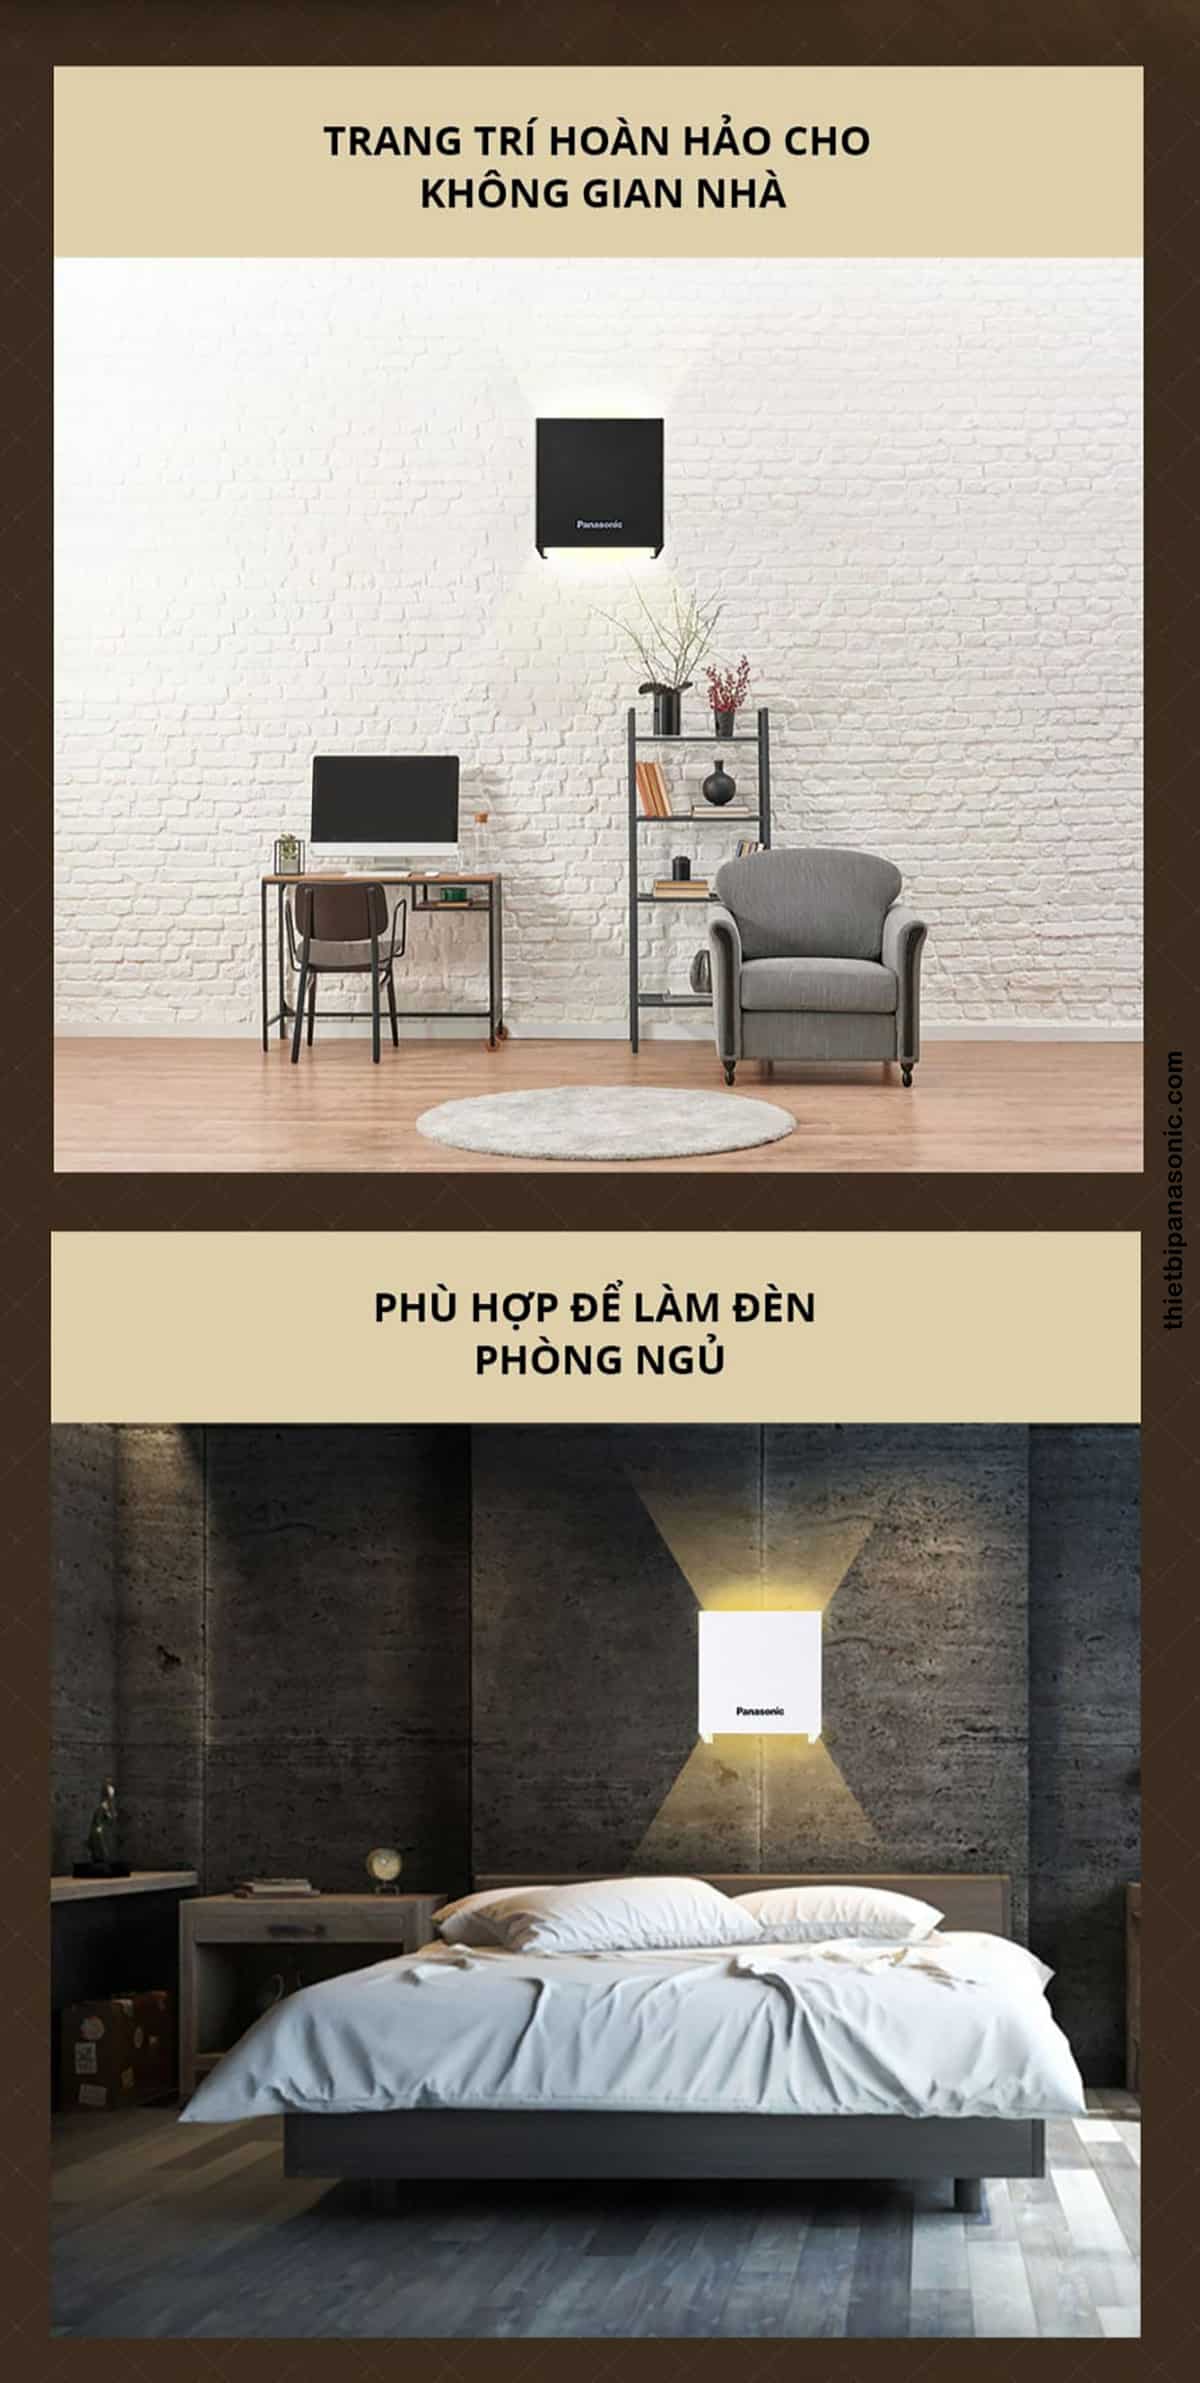 Có thể sử dụng Đèn hắt tường HHBQ1005B88 để trang trí cho không gian nhà hoặc làm đèn ngủ.